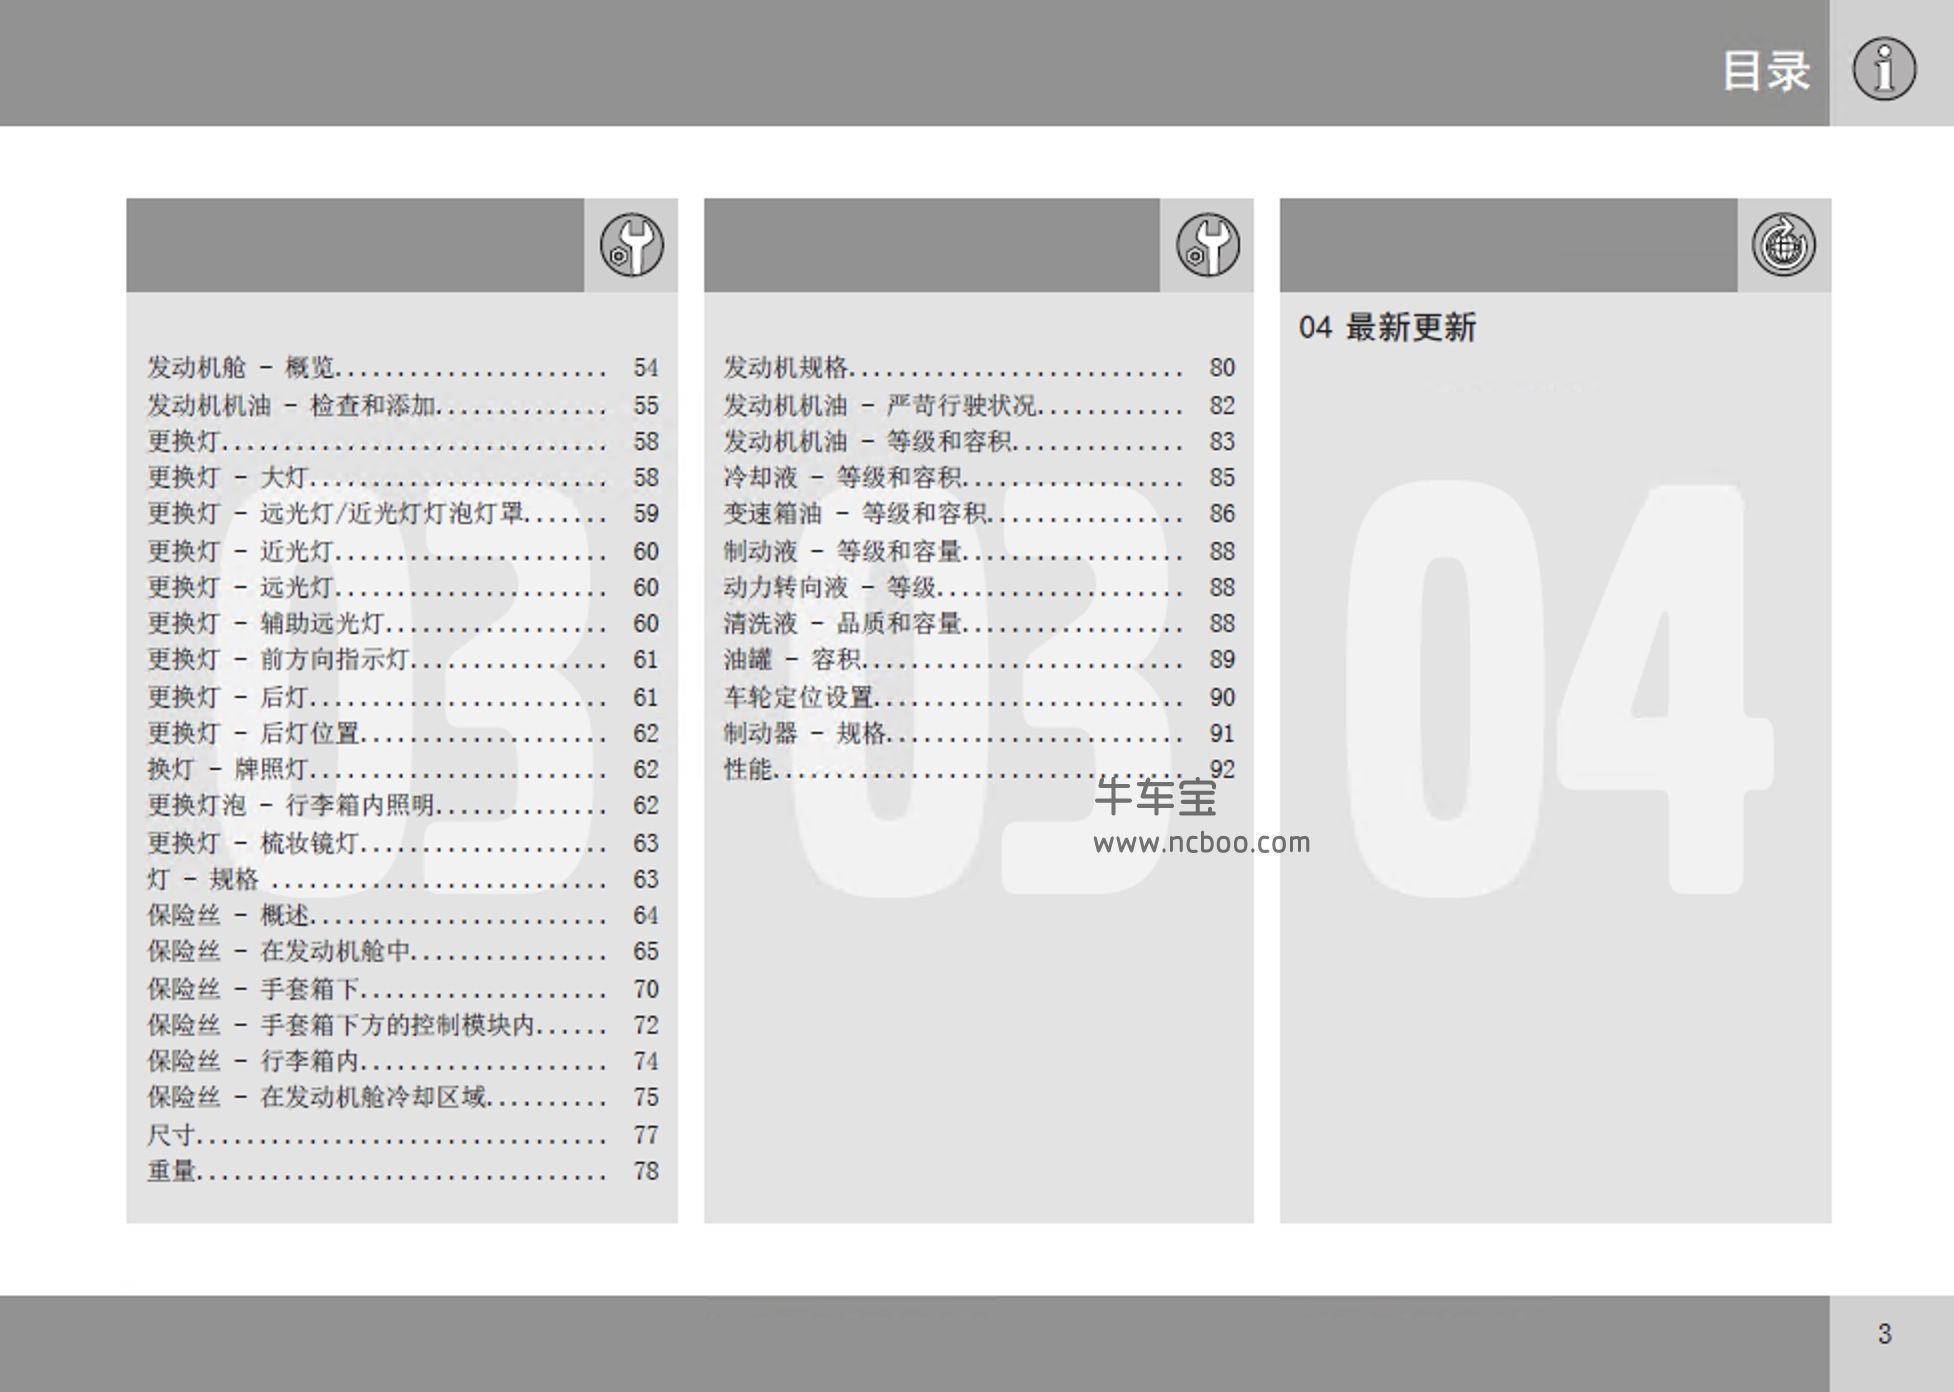 2015-2017款沃尔沃XC60车主手册产品使用说明书pdf下载